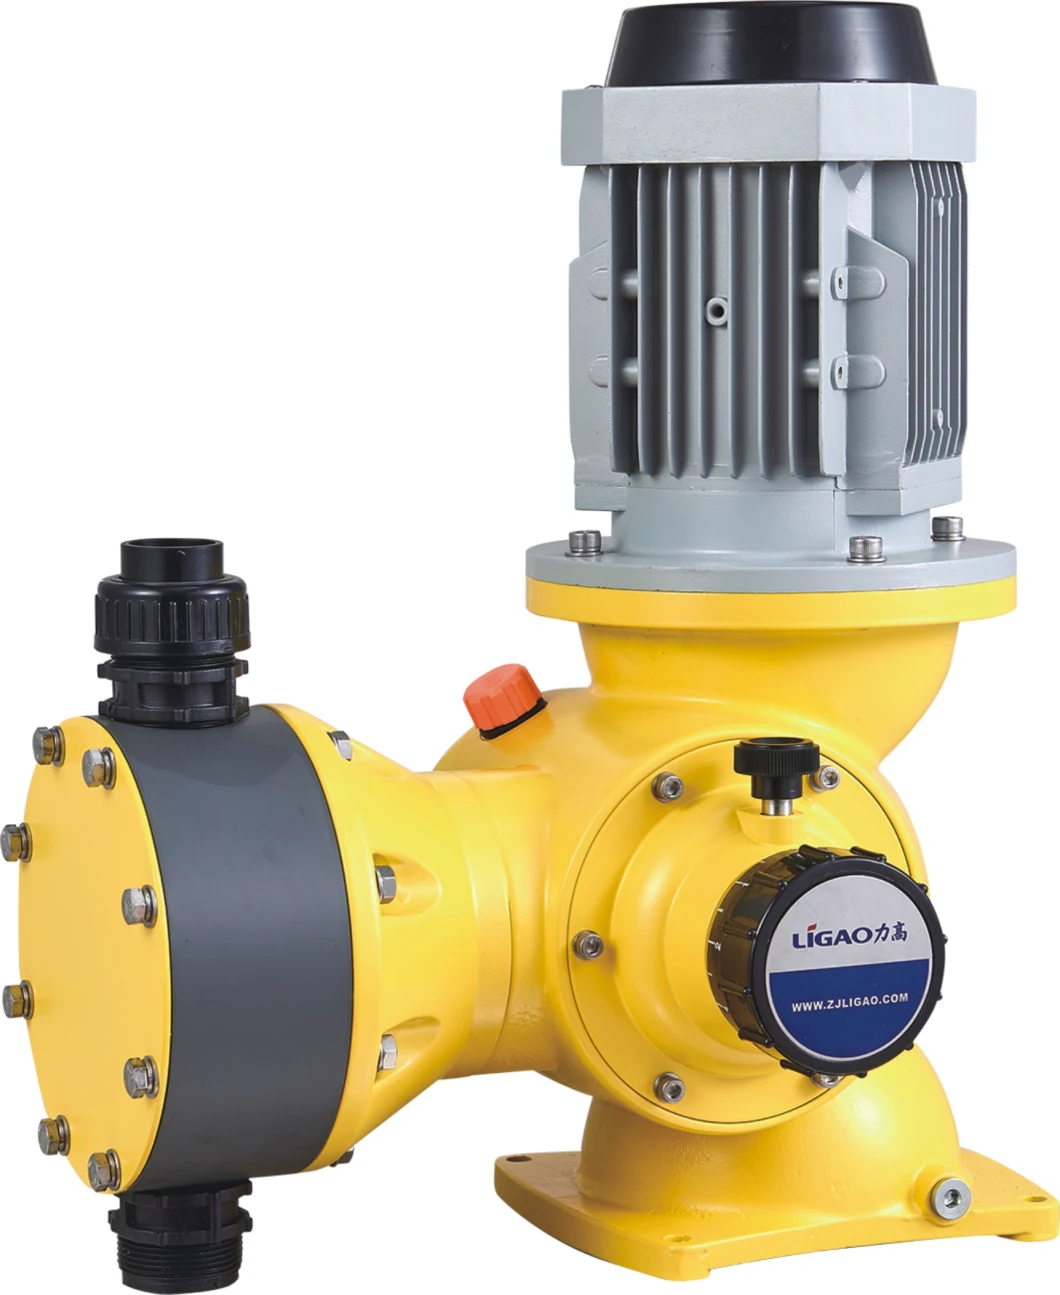 GB680/0.7 0-680lph@7bar Diaphragm Metering Pump Mechanical Chemical Dosing Metering Pump